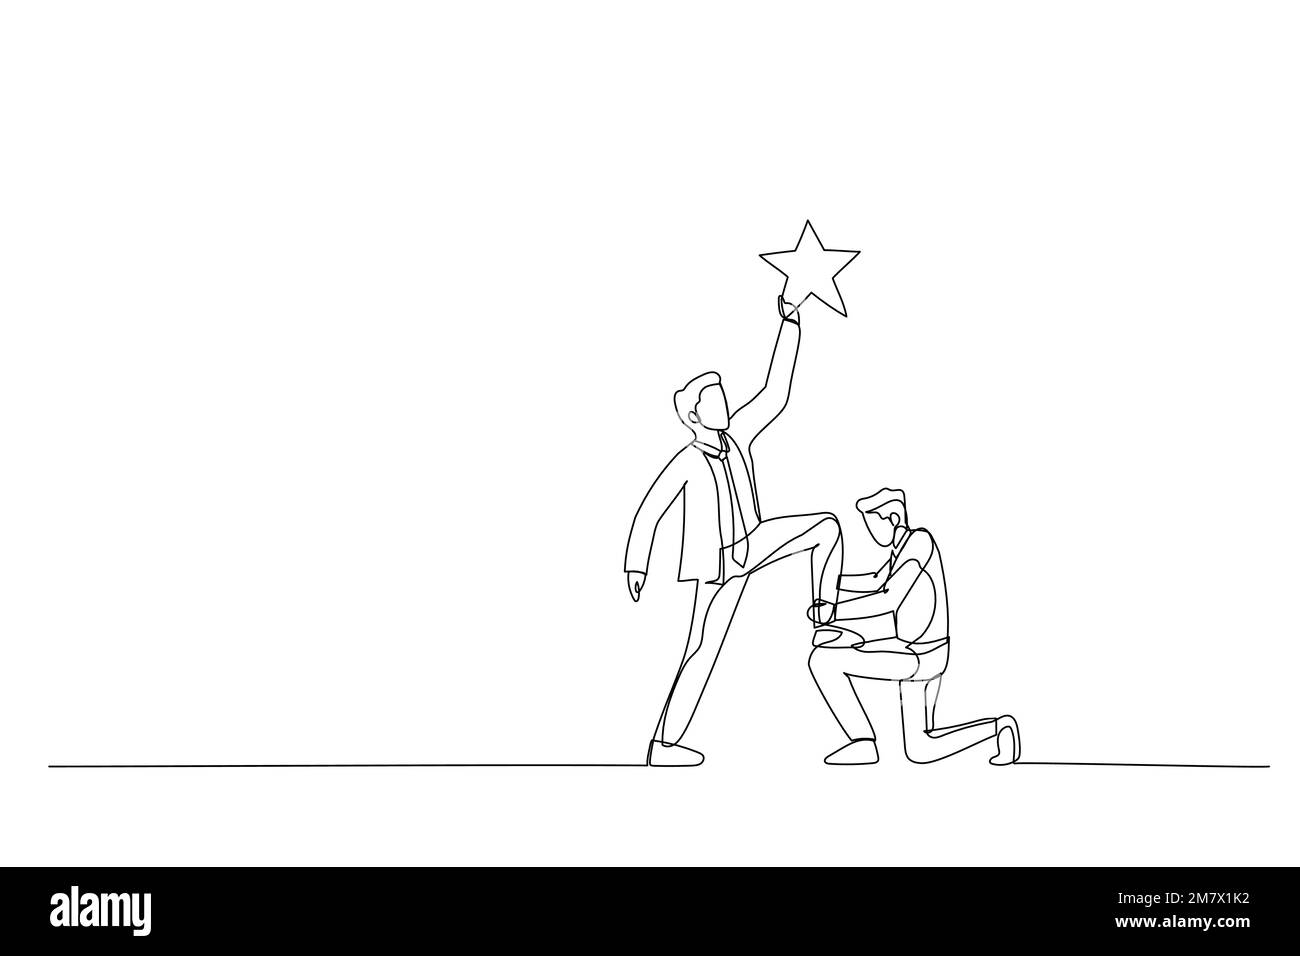 Zeichnung eines Geschäftsführers, der den Kollegen unterstützt, auf dem Knie zu stehen, um das Ziel zu erreichen. Metapher für Teamwork. Strichgrafiken Stock Vektor